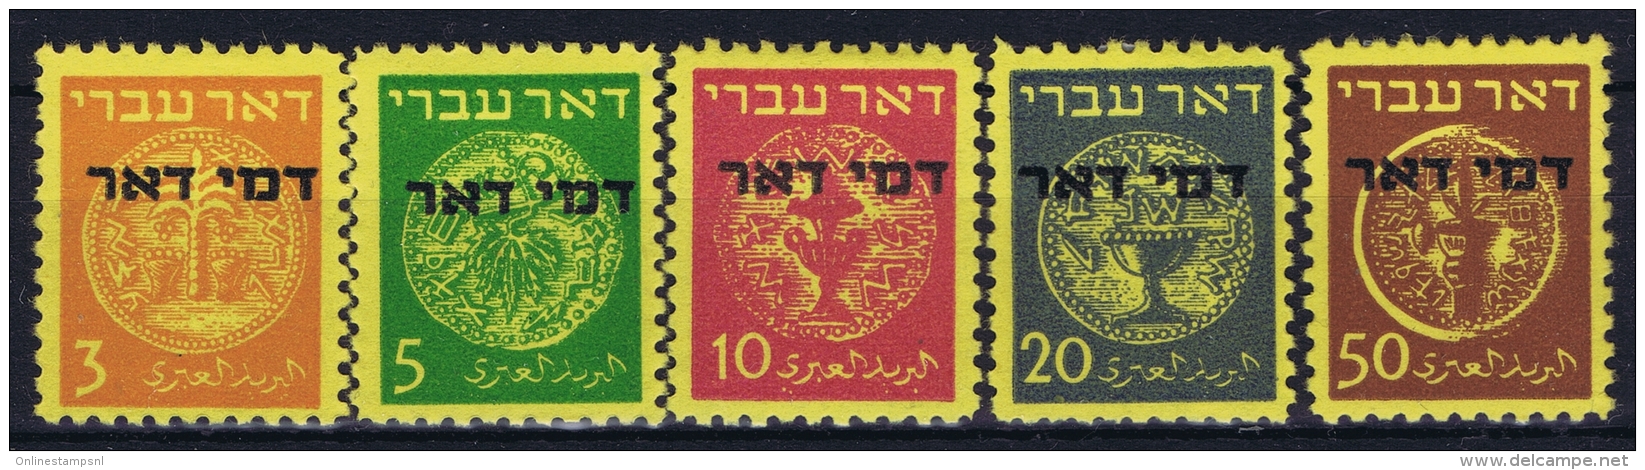 Israel : Mi Nr 1 - 5 MH/* Flz/ Charniere  20 M Has Paper On Back - Portomarken